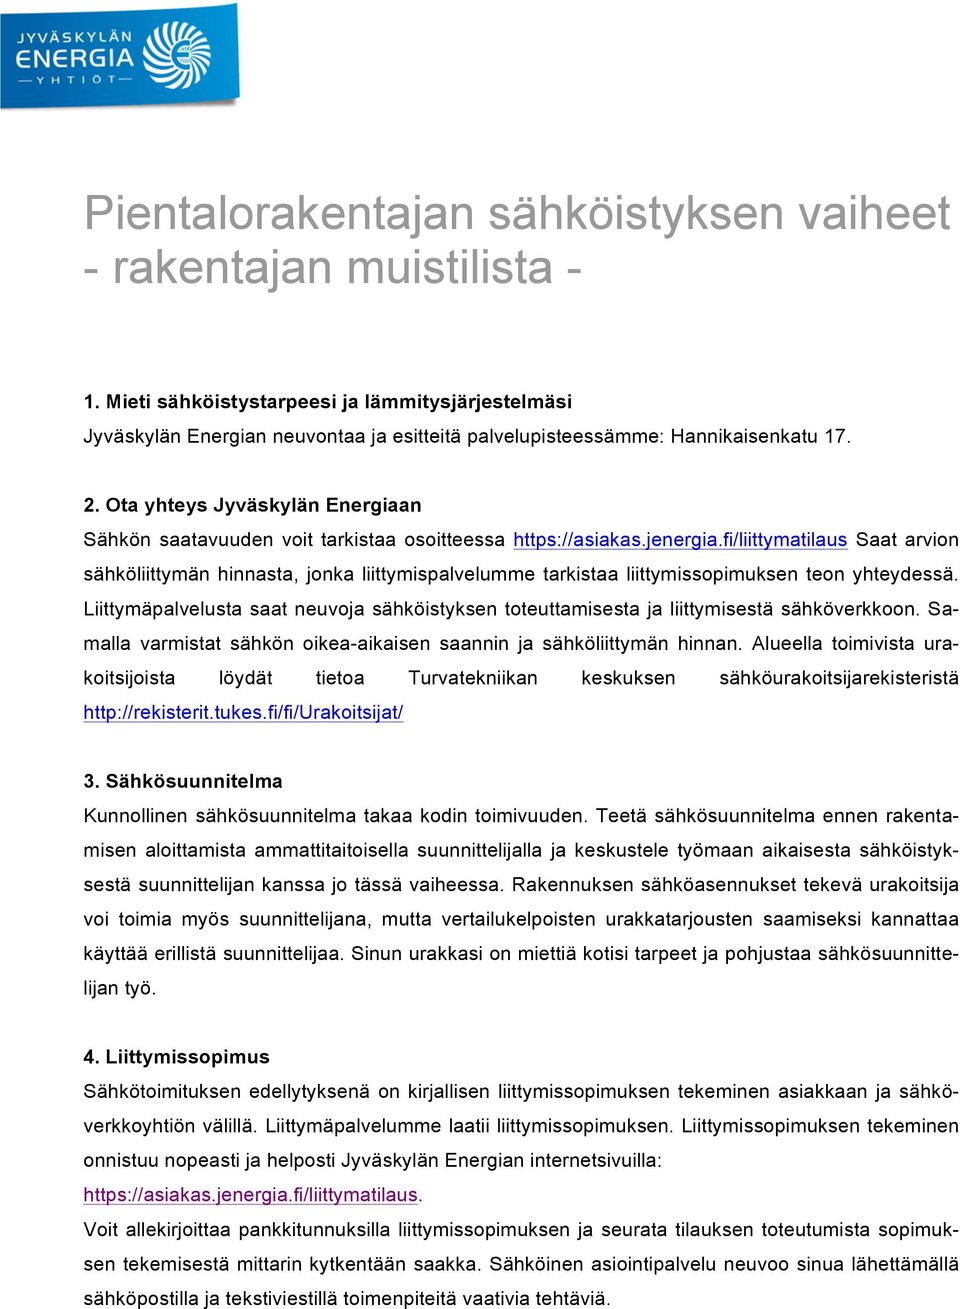 Ota yhteys Jyväskylän Energiaan Sähkön saatavuuden voit tarkistaa osoitteessa https://asiakas.jenergia.